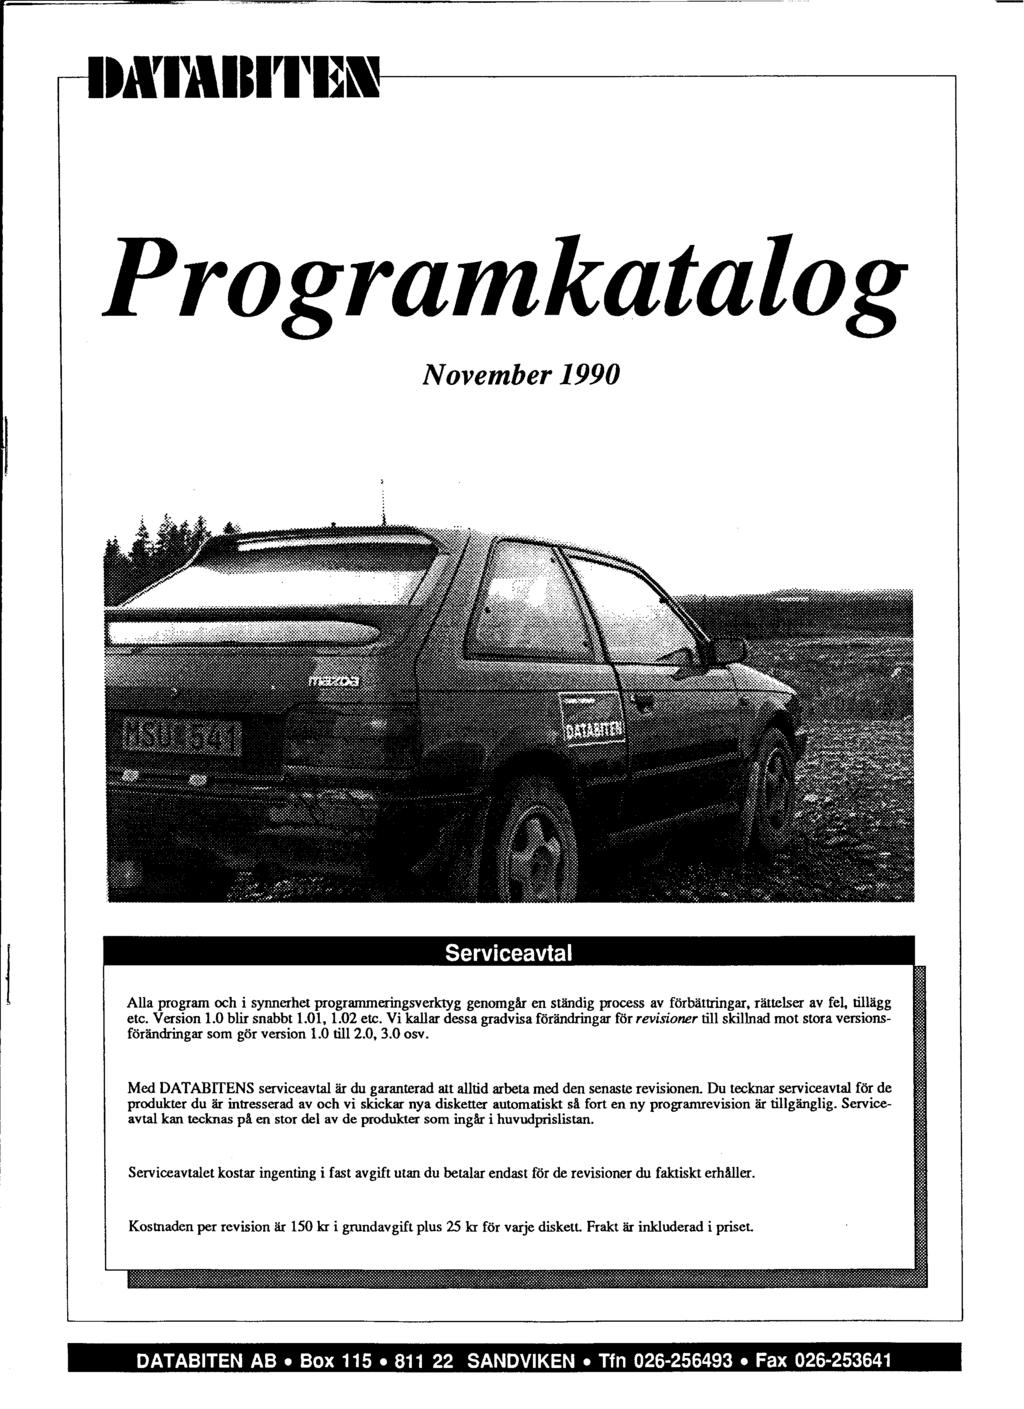 Programkatalog November 1990 Aiia program och i synnerhet programmeringsverktyg genorngar en ständig process av förbättringar. rättelser av fel tillagg etc. Version 1.0 bli snabbt 1.01, 1.02 etc.